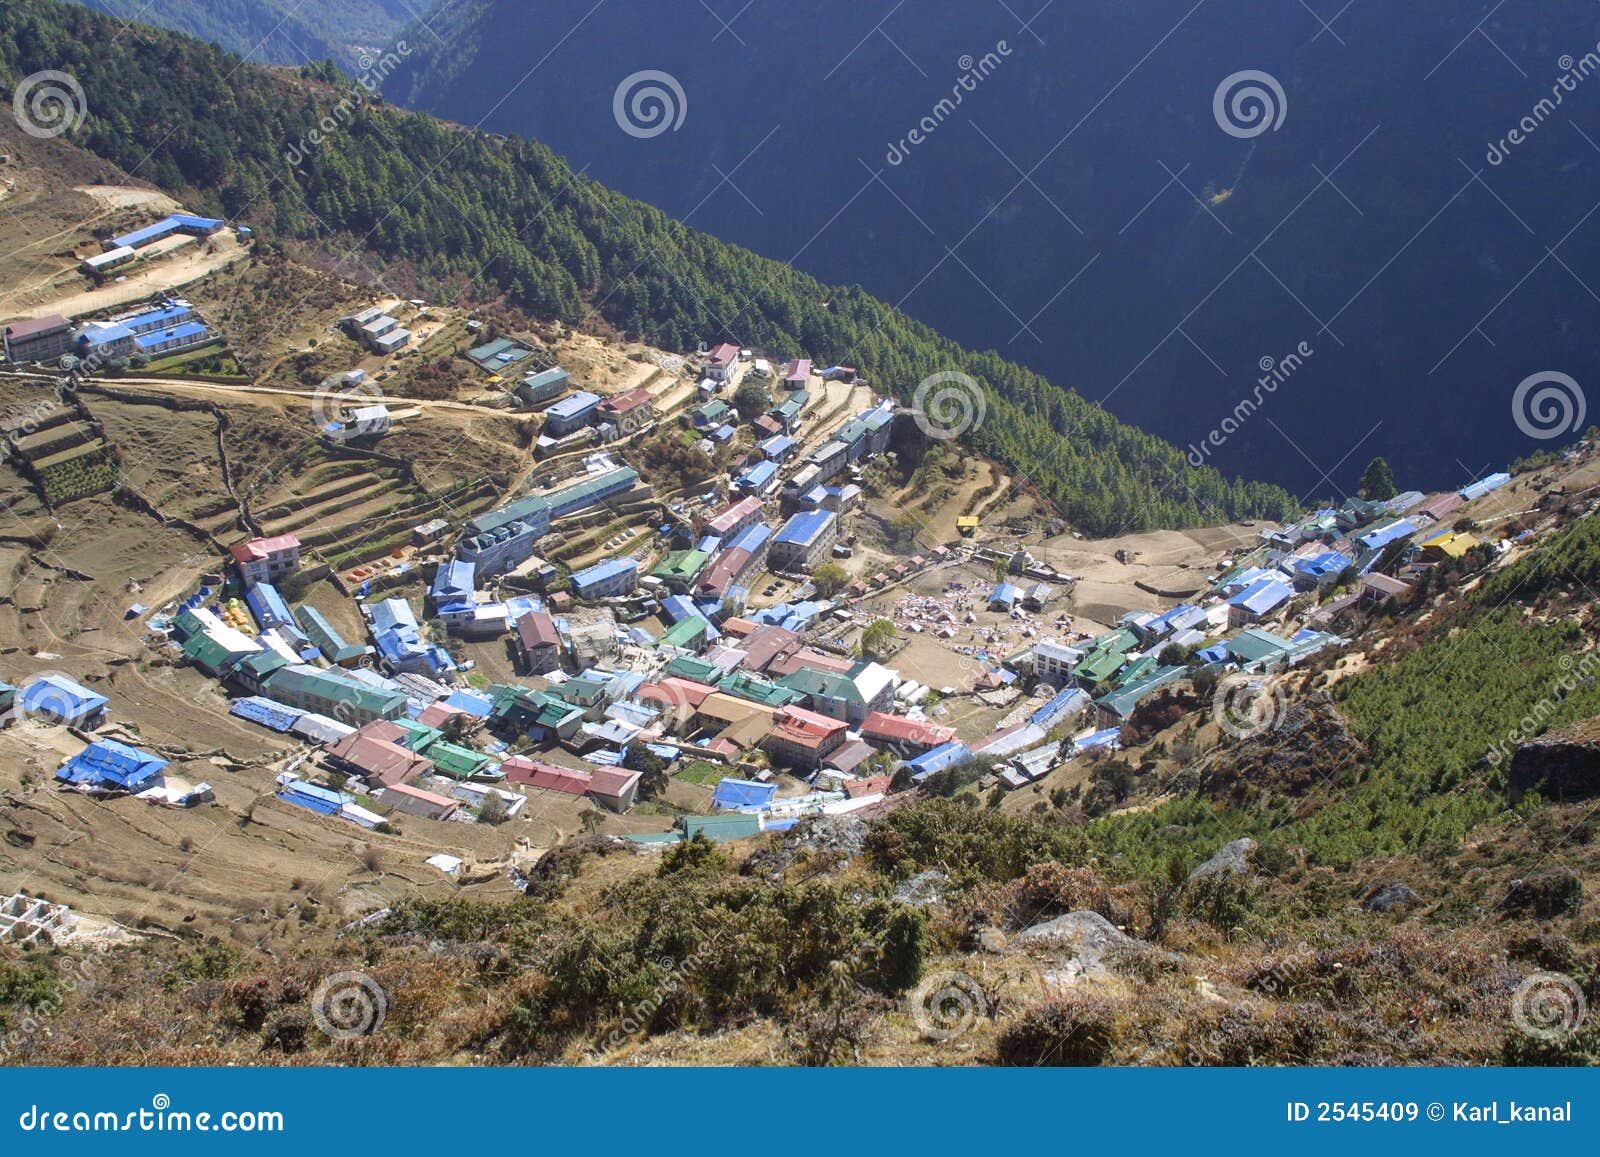 namche bazar - nepal himalaya